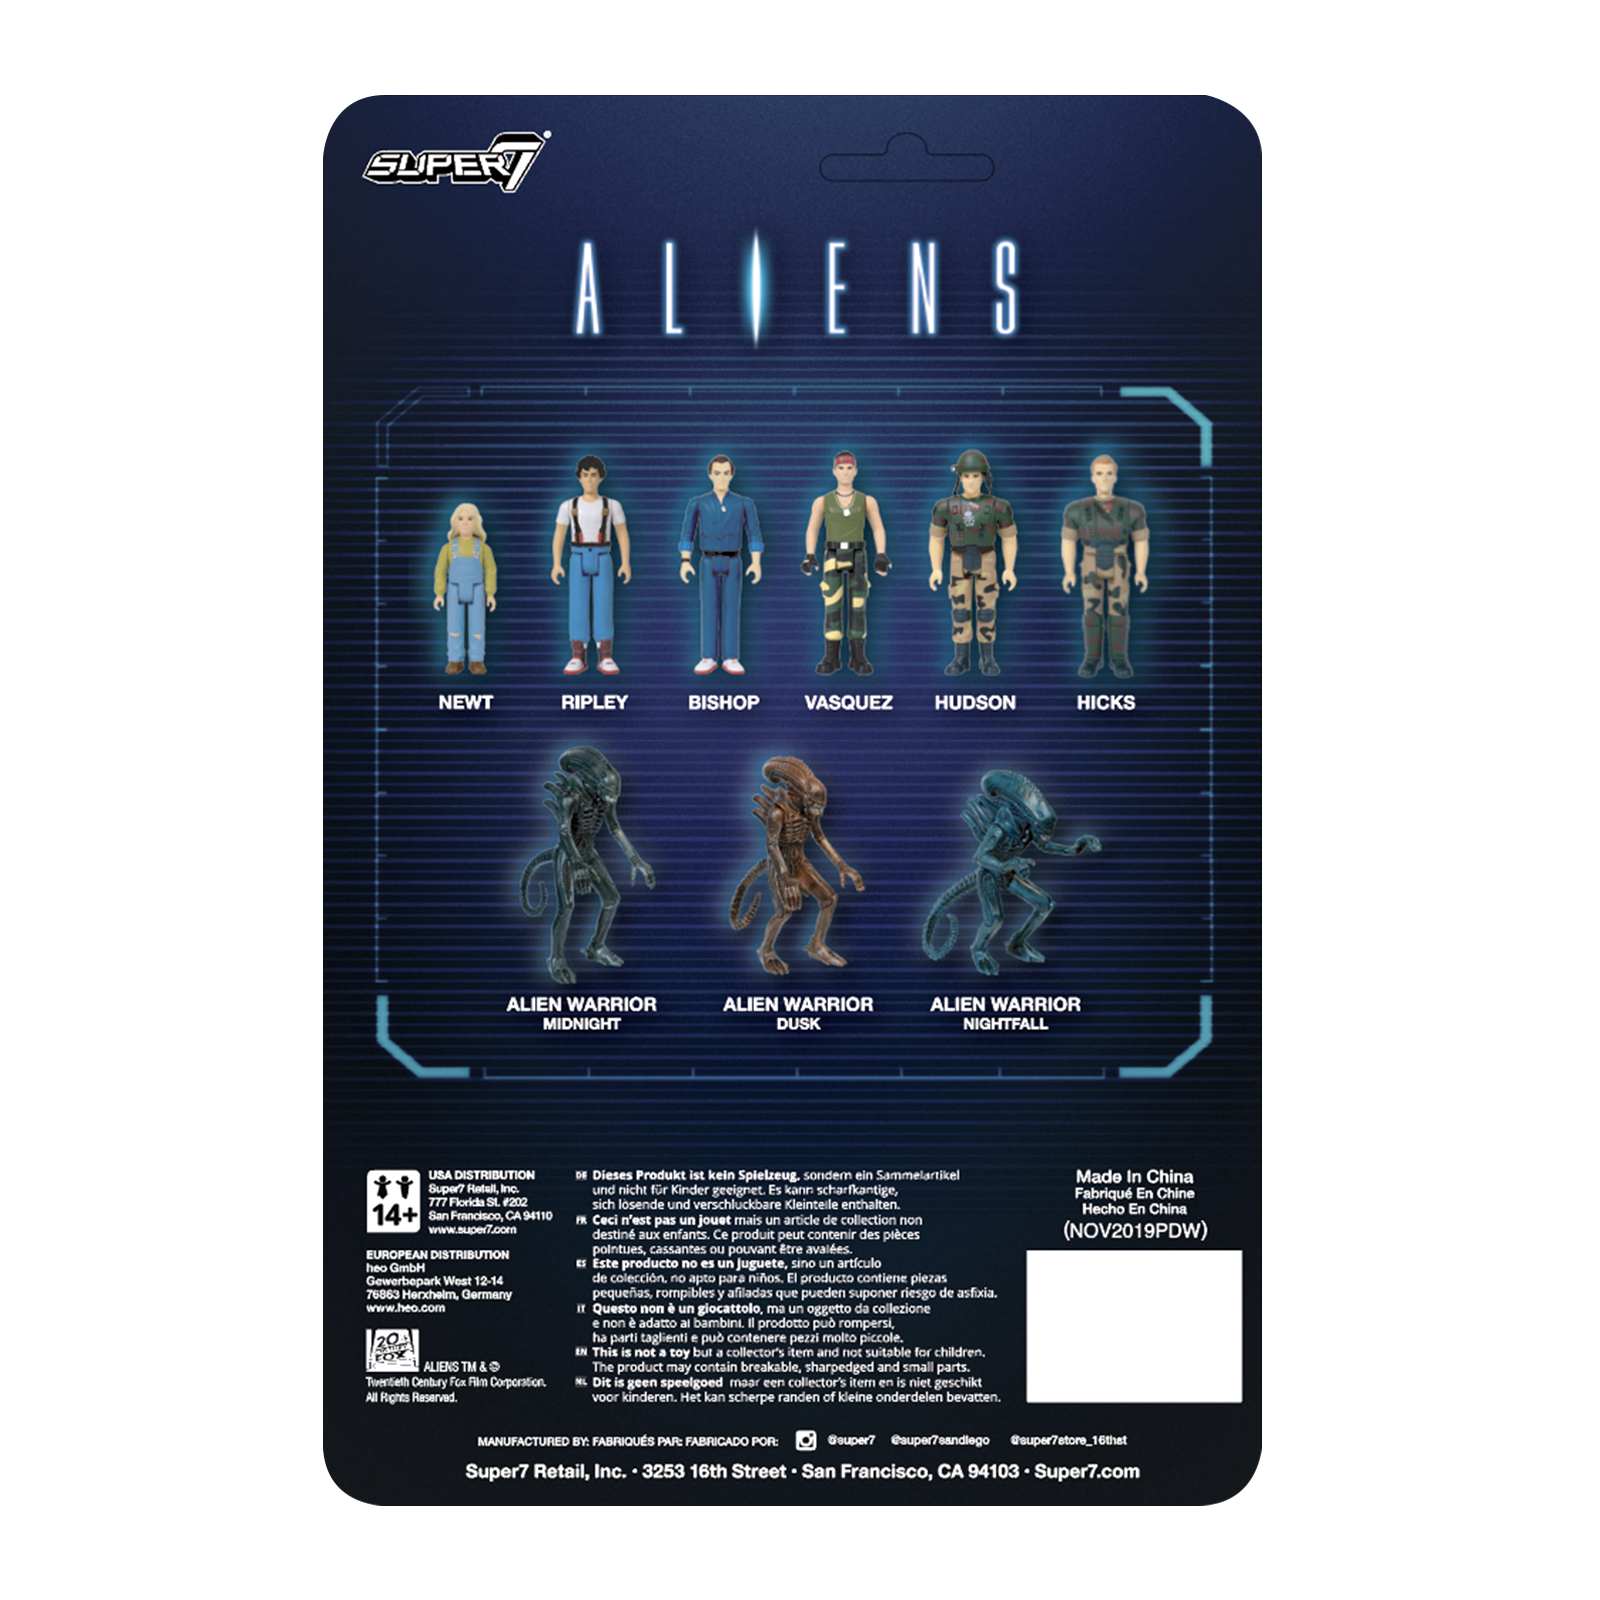 Aliens ReAction Figure - Newt - Zlc Collectibles